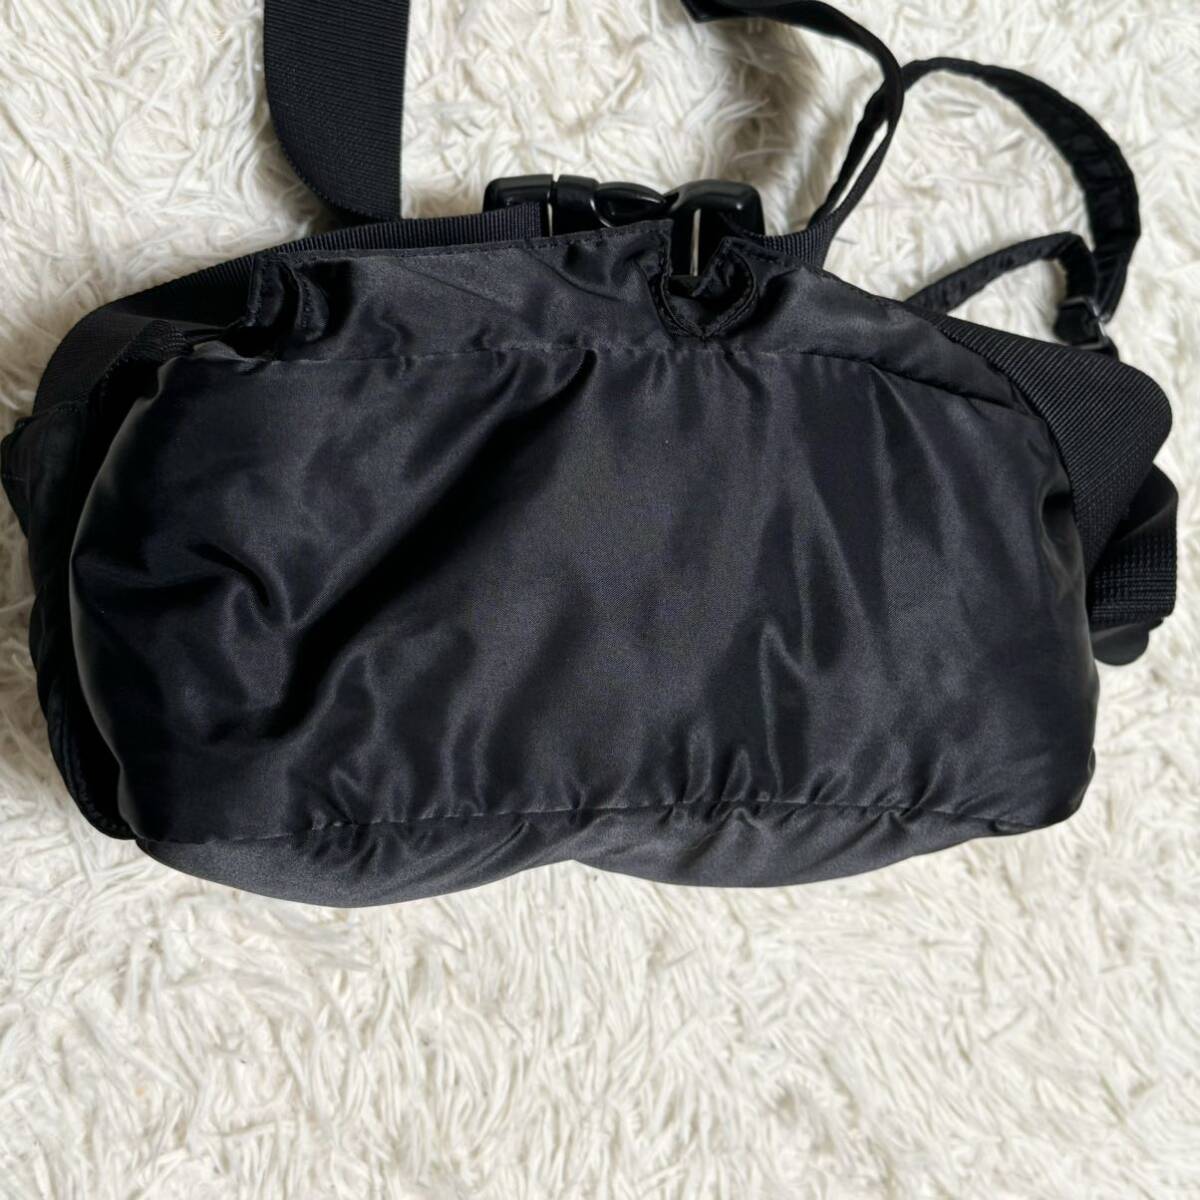  превосходный товар /2way * PORTER Porter Yoshida bag язык машина сумка на плечо сумка "body" поясная сумка бизнес 2 слой нейлон черный чёрный 